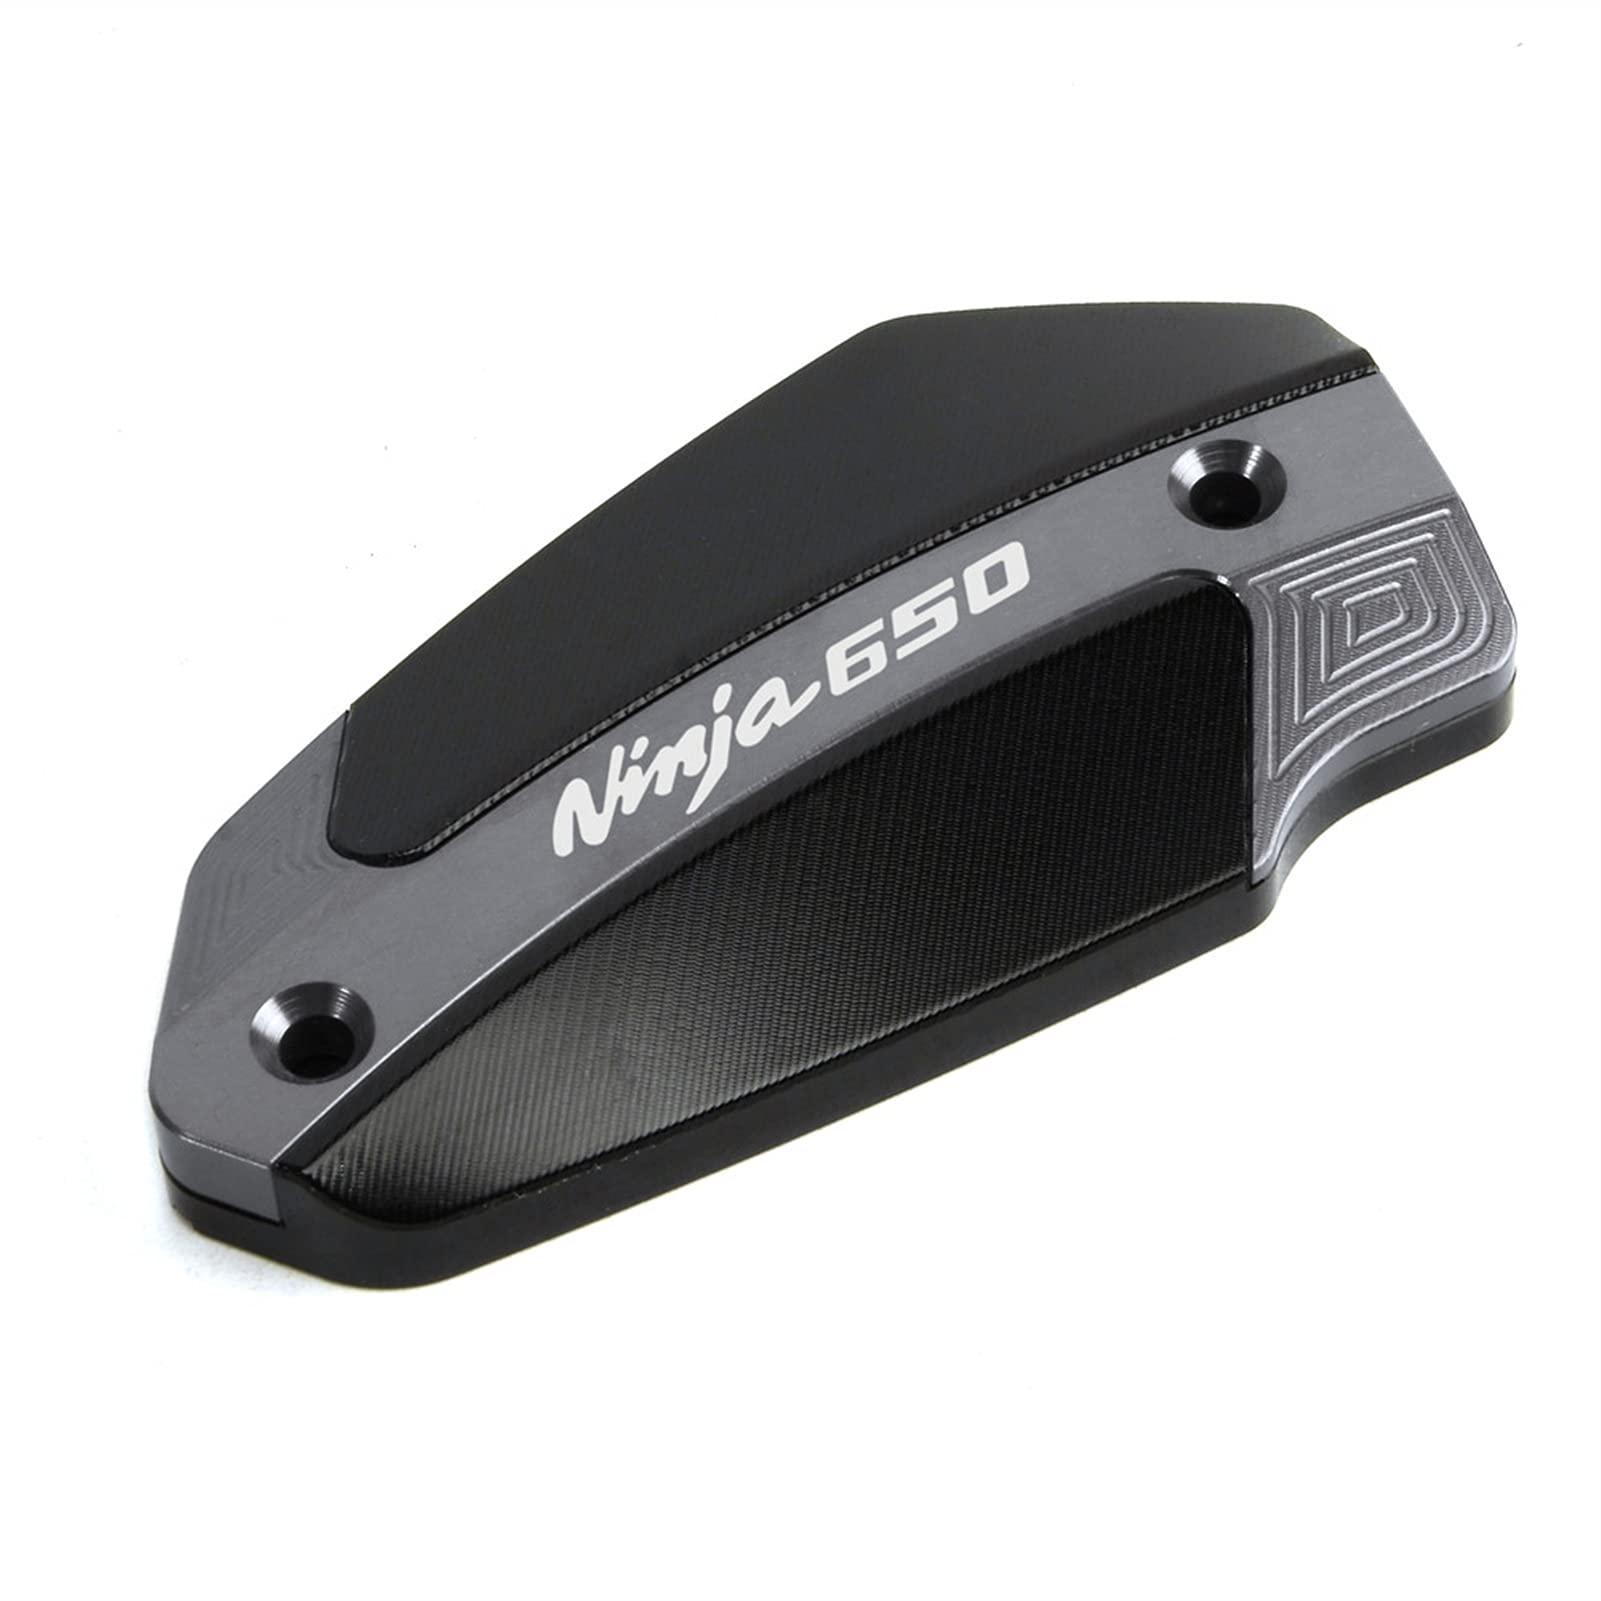 WRDD Motorrad Vorderer Bremsflüssigkeitsdeckel Für Kawasaki Ninja 650. Ninja650 2016 2017 2018 2019 2019 2020 2021 Motorrad-Styling. (Farbe : Titan) von WRDD